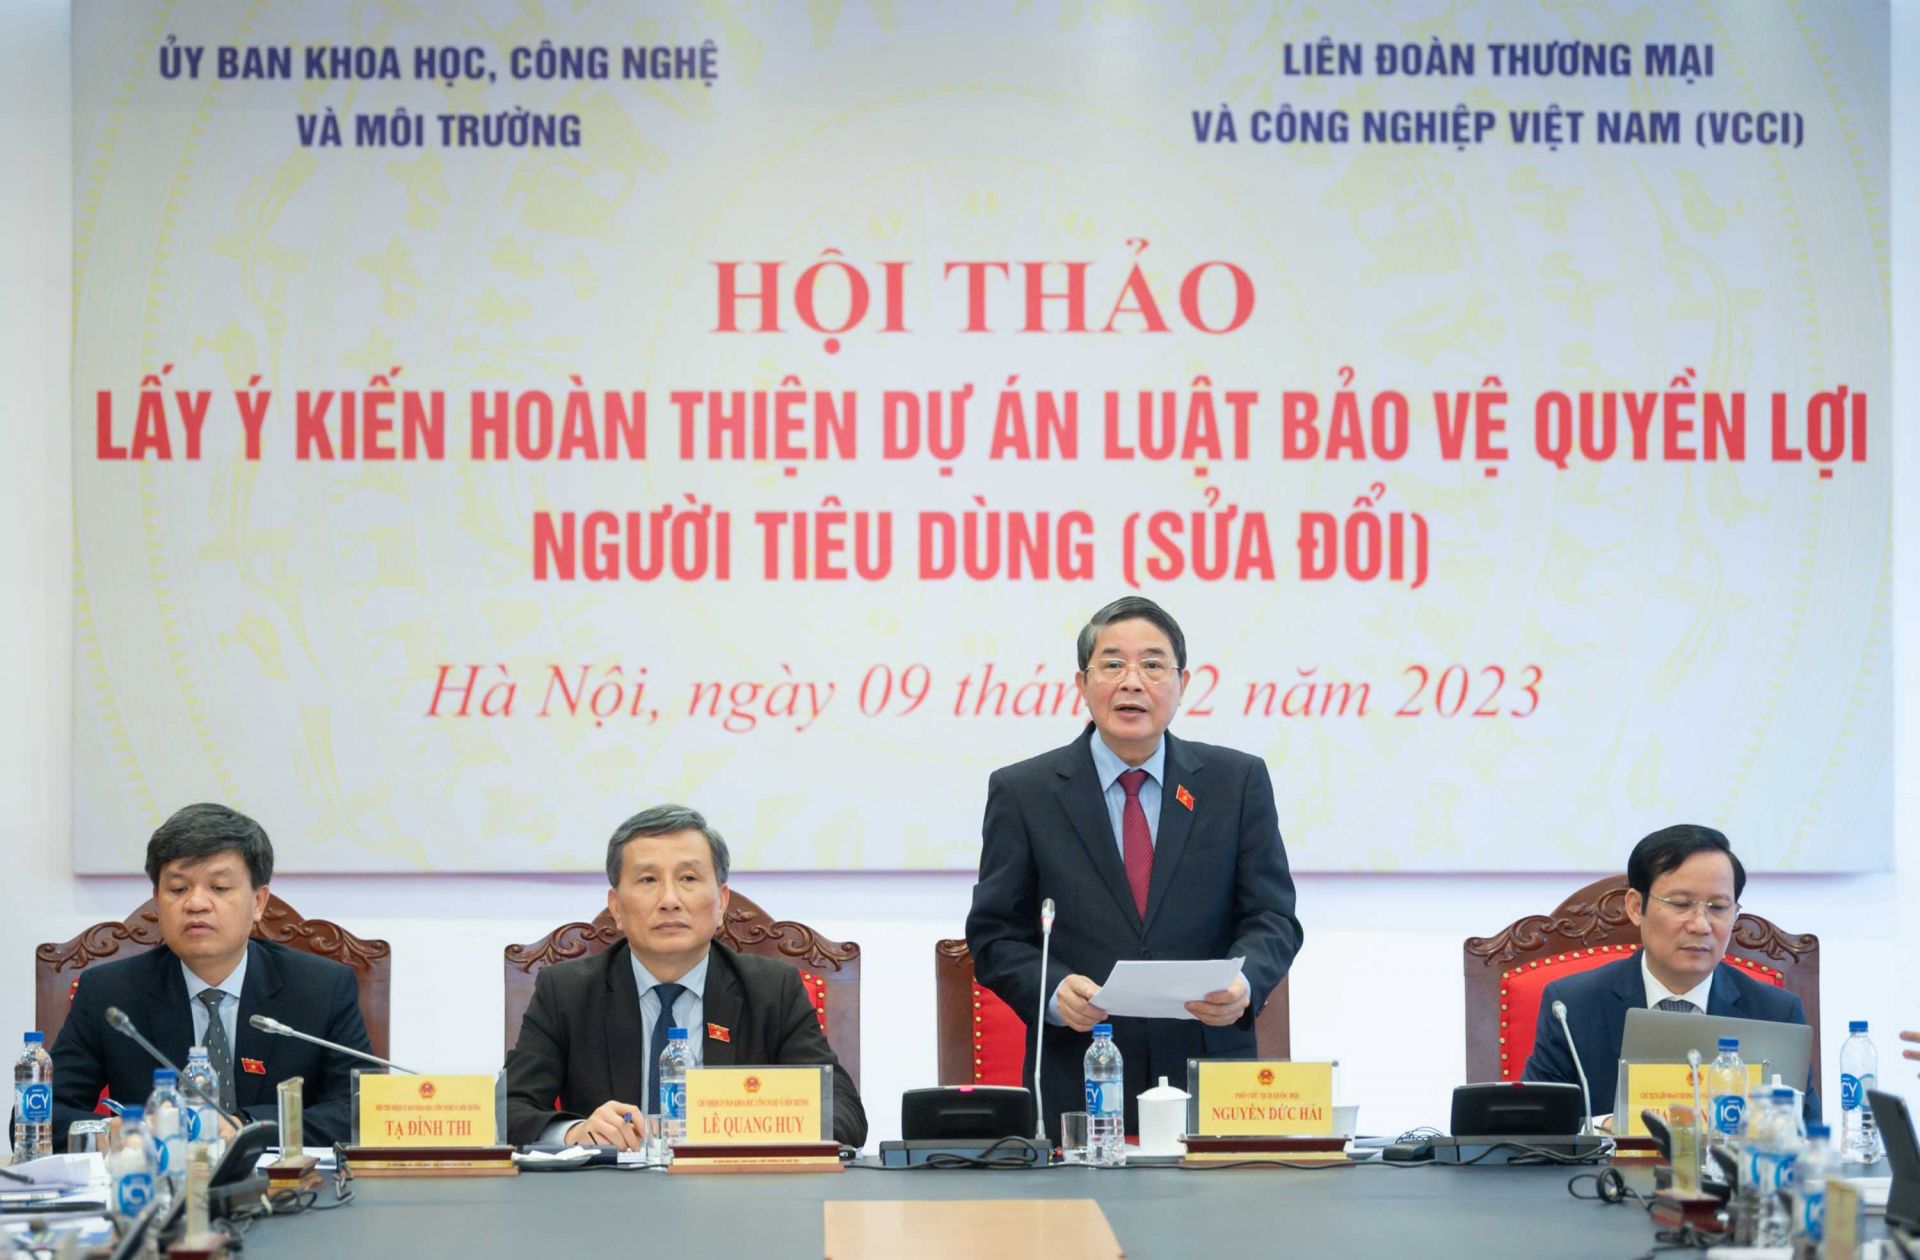 Phó Chủ tịch Quốc hội Nguyễn Đức Hải phát biểu chỉ đạo tại Hội thảo